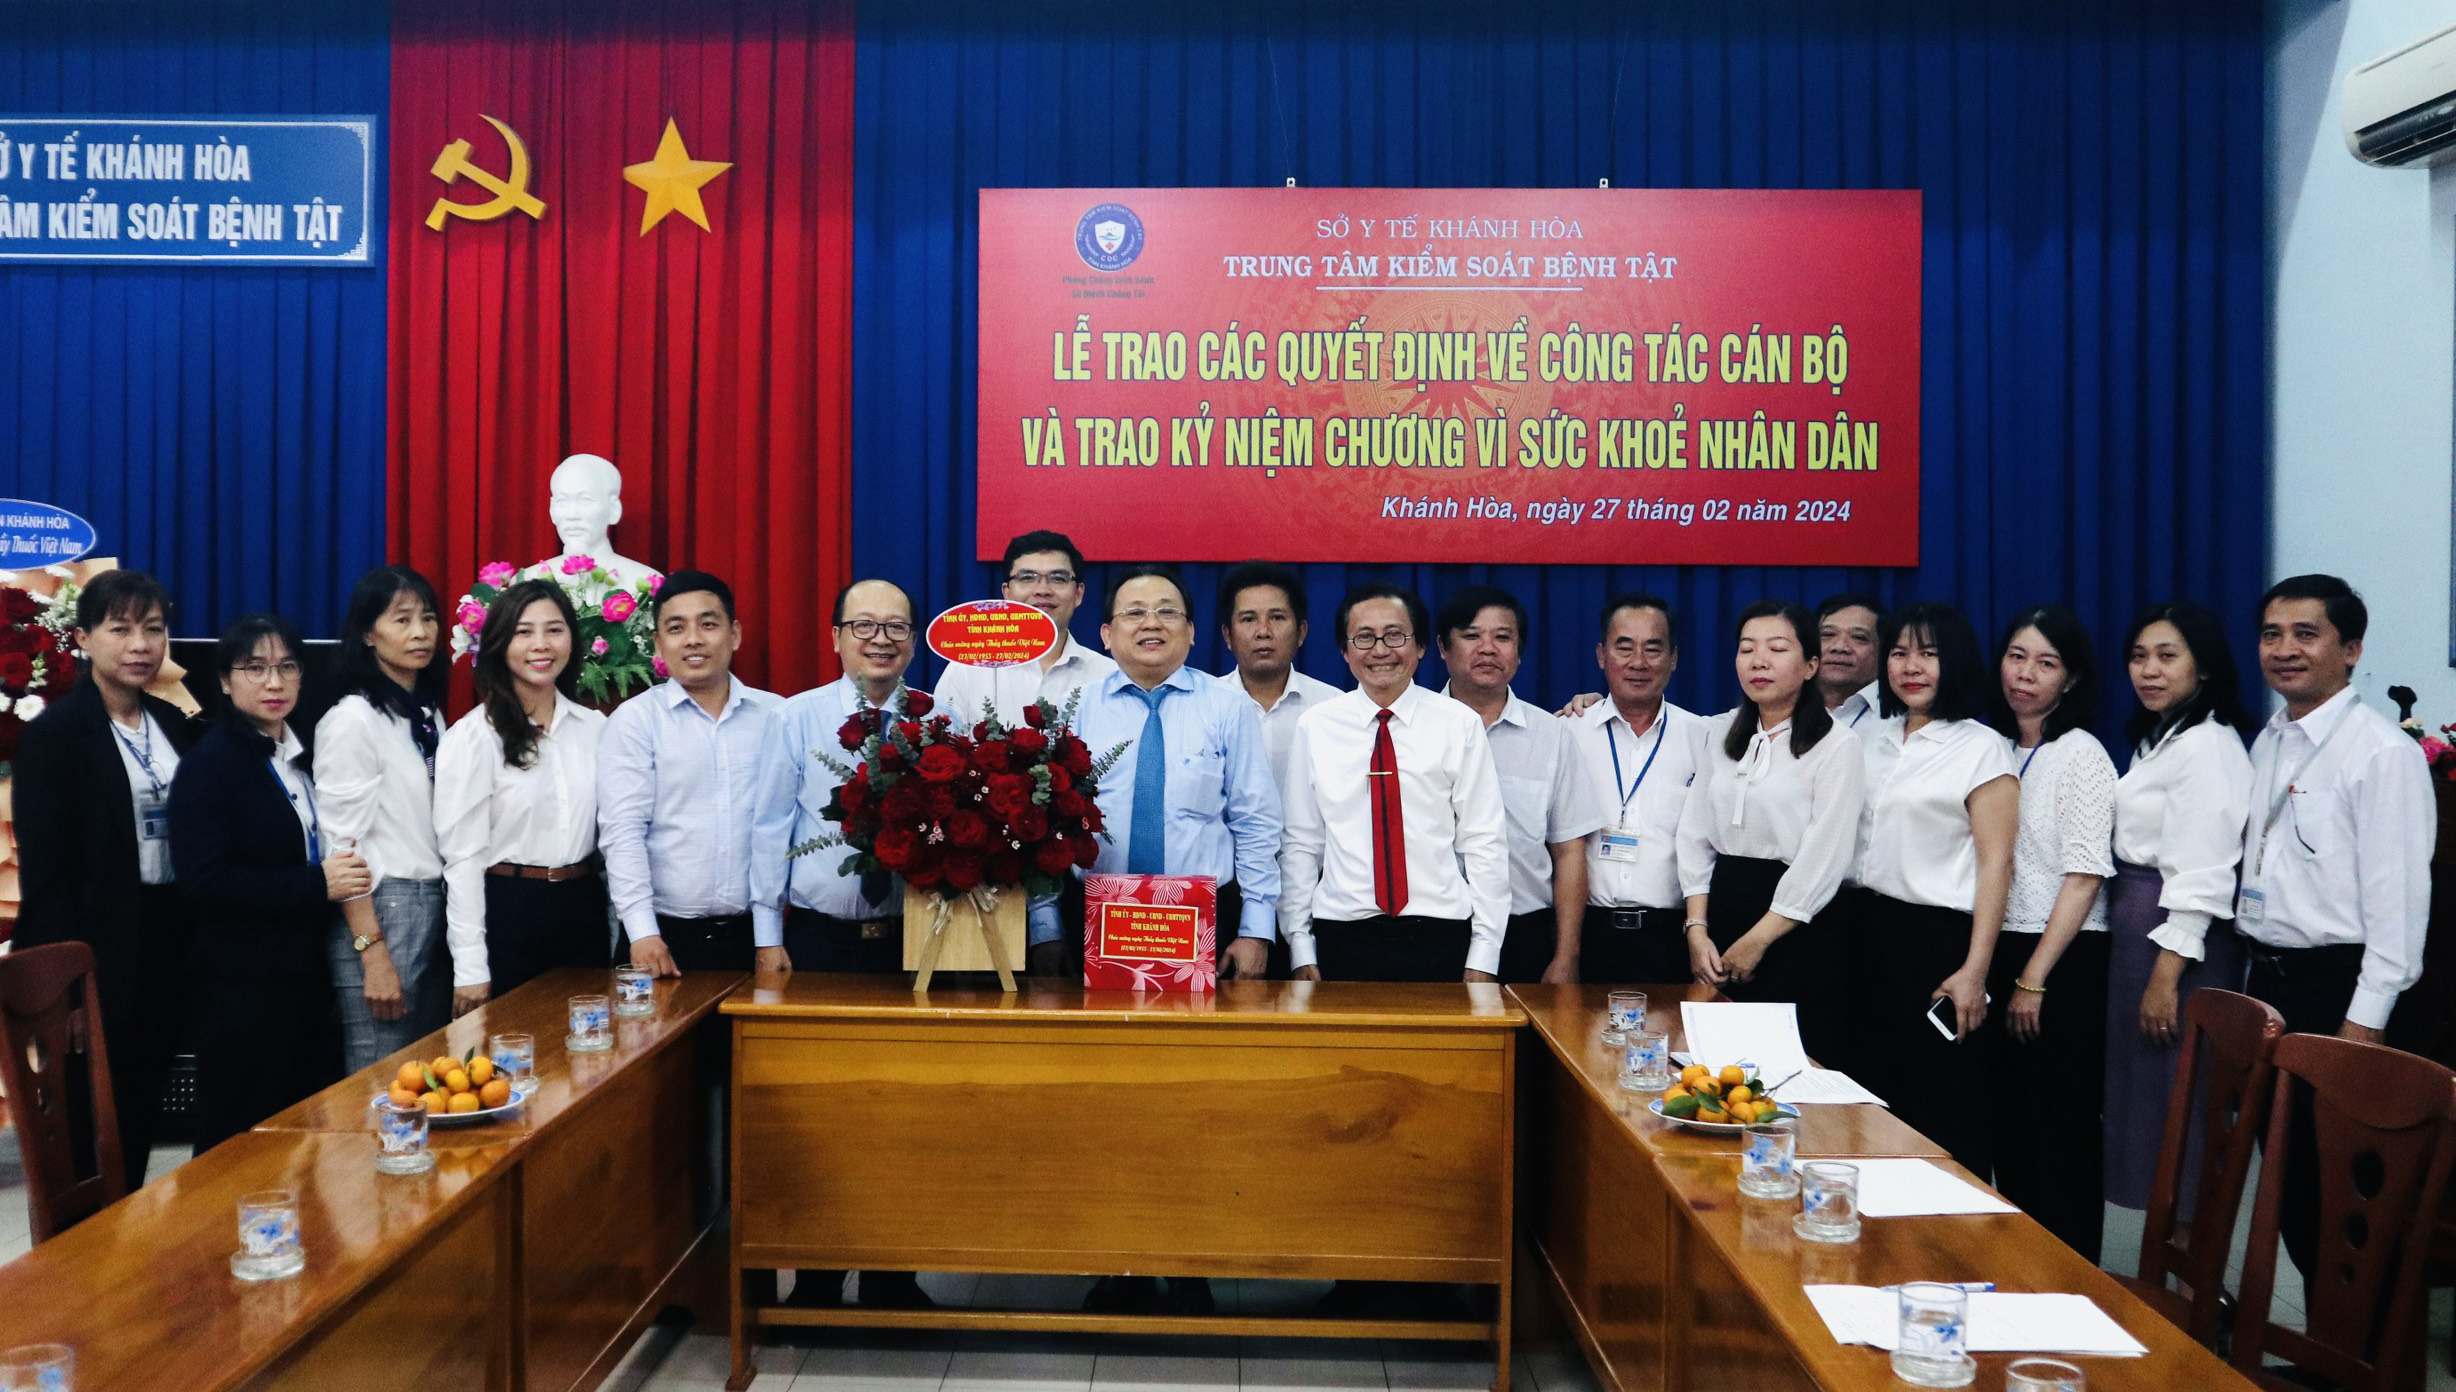 Phó Chủ tịch Thường trực UBND tỉnh Lê Hữu Hoàng thăm Trung tâm Kiểm soát bệnh tật tỉnh